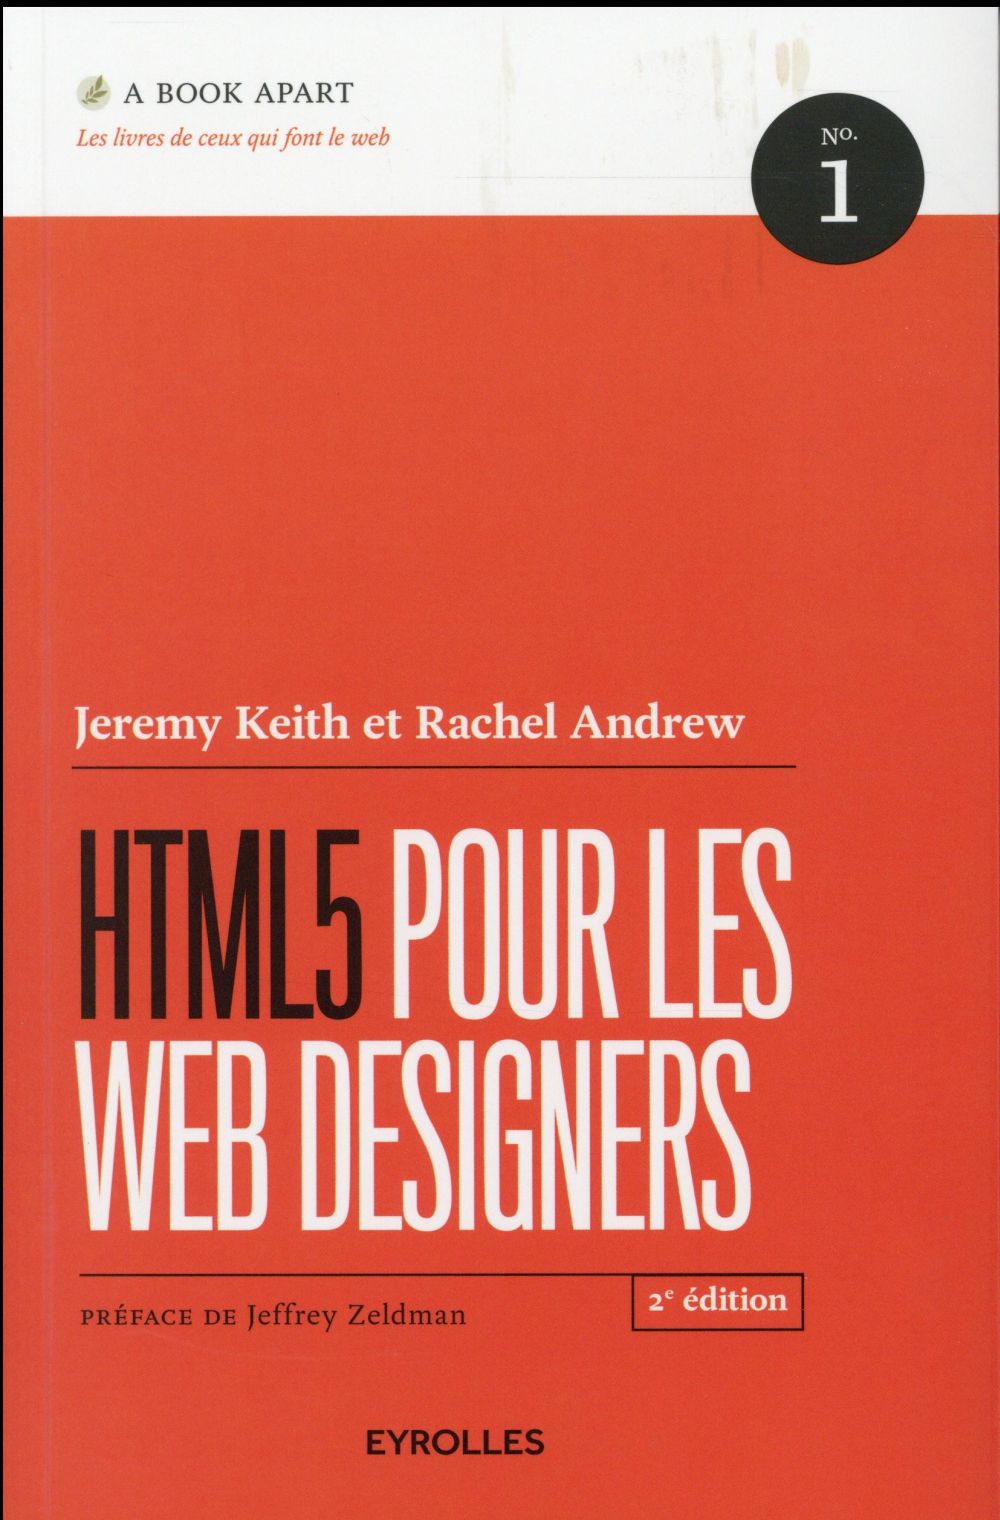 HTML5 POUR LES WEB DESIGNERS, 2E EDITION